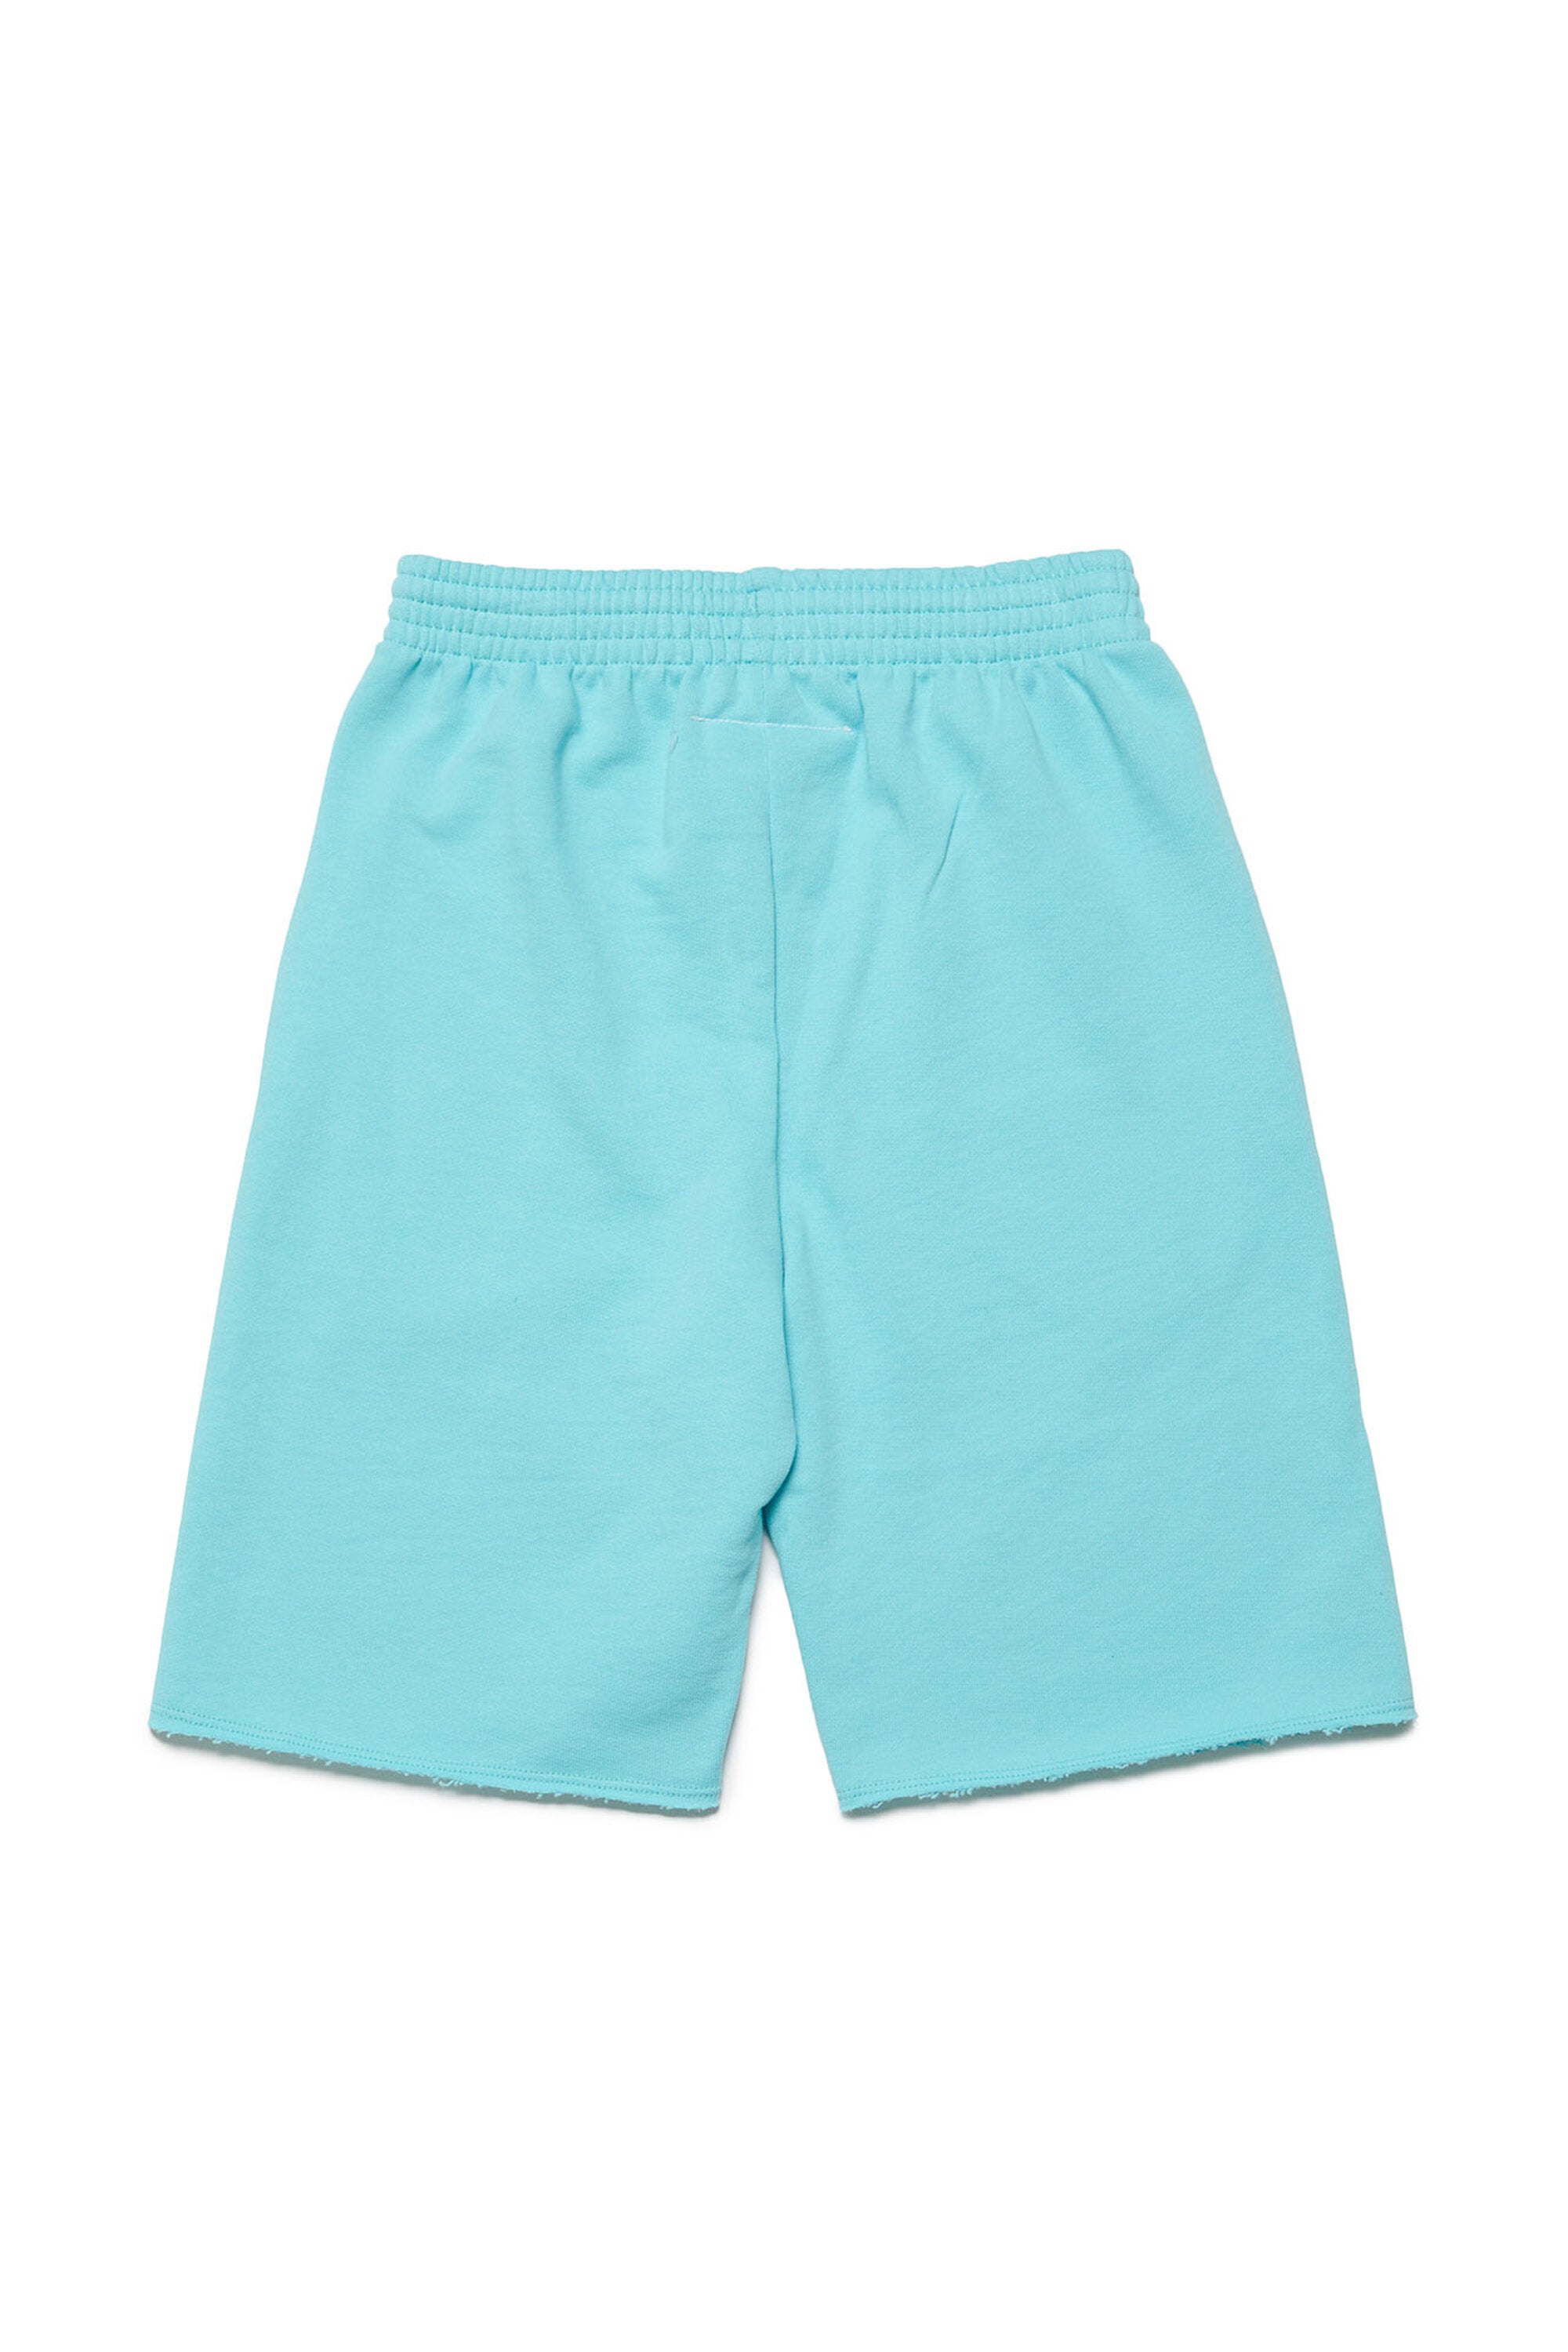 Pantalones cortos en chándal con logotipo efecto Píxel